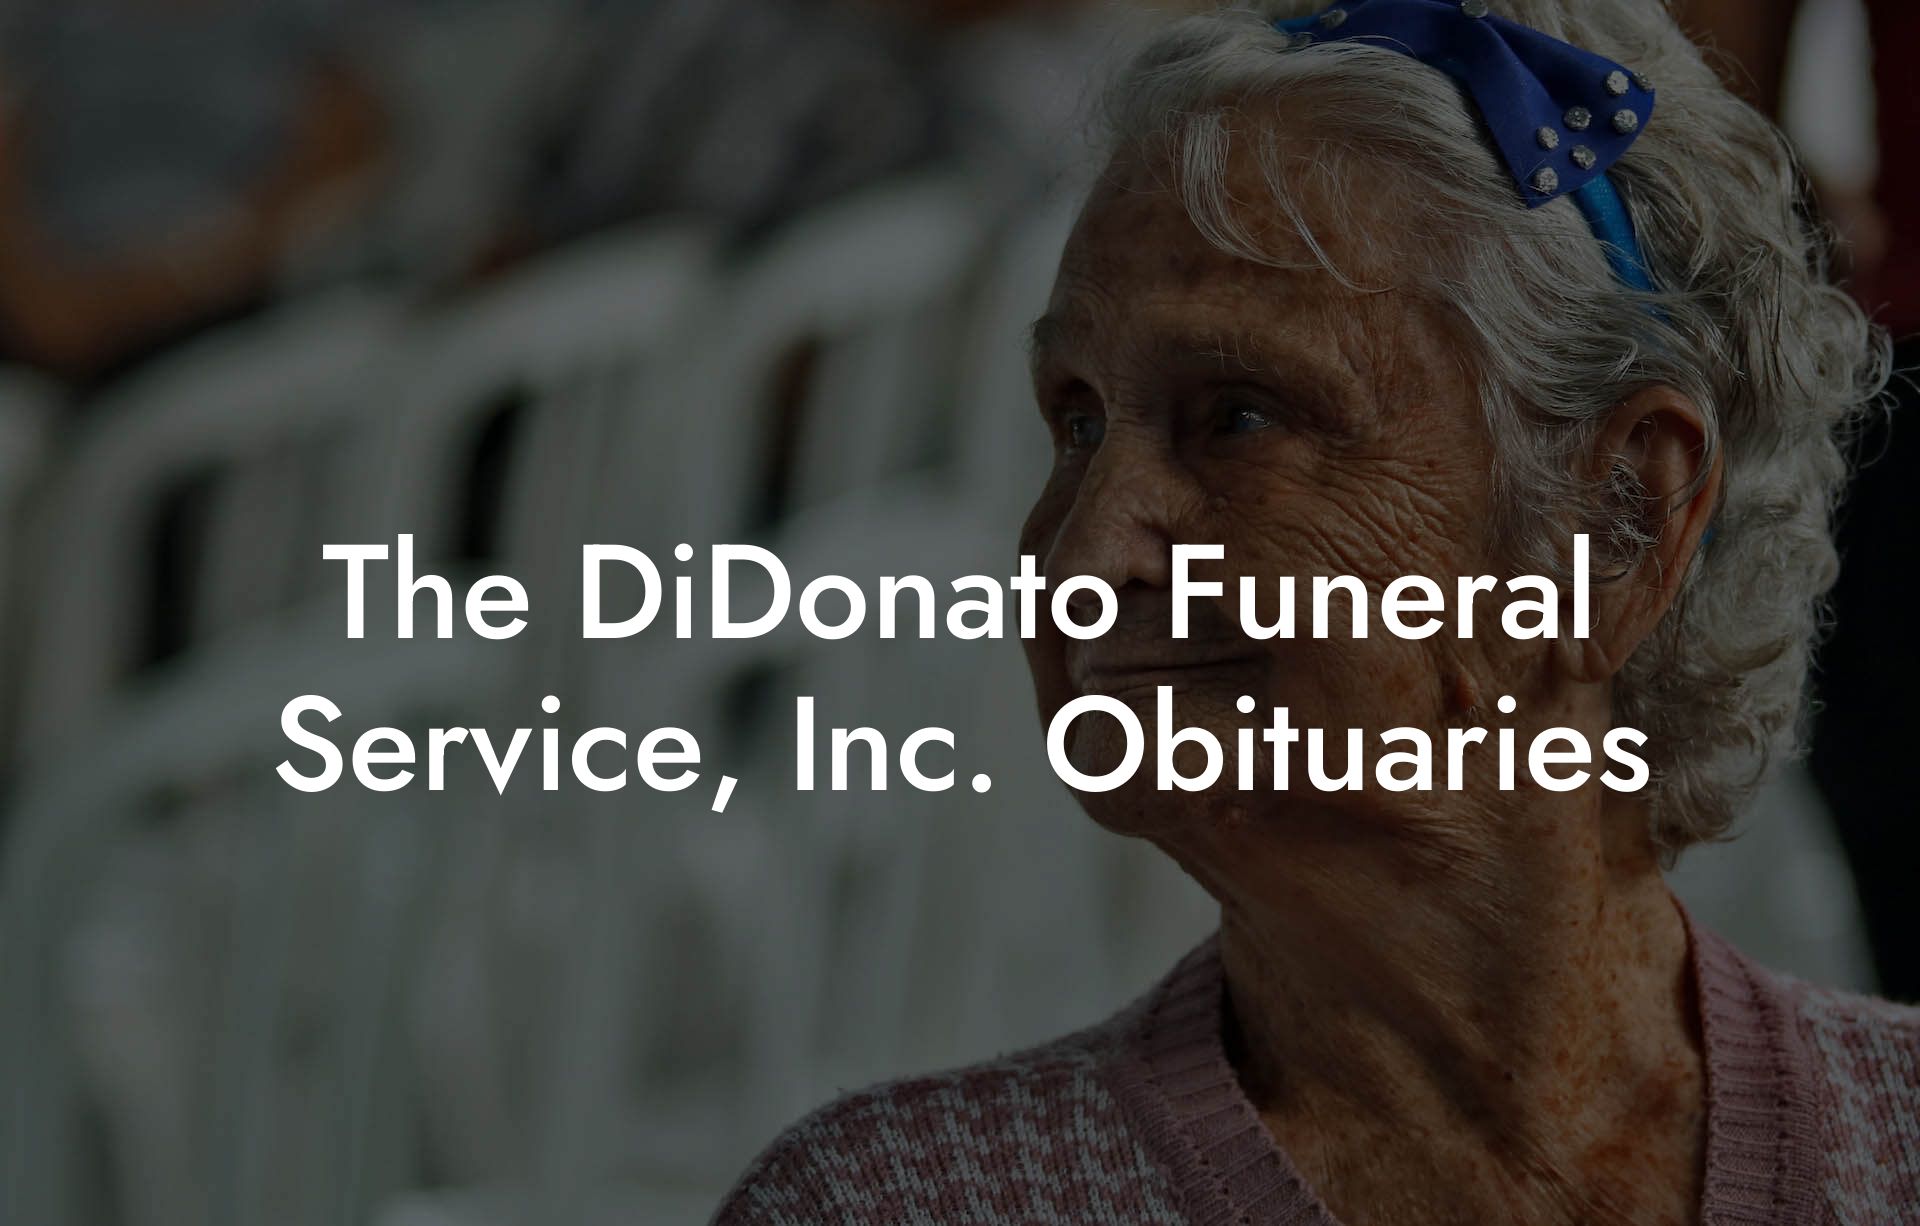 The DiDonato Funeral Service, Inc. Obituaries